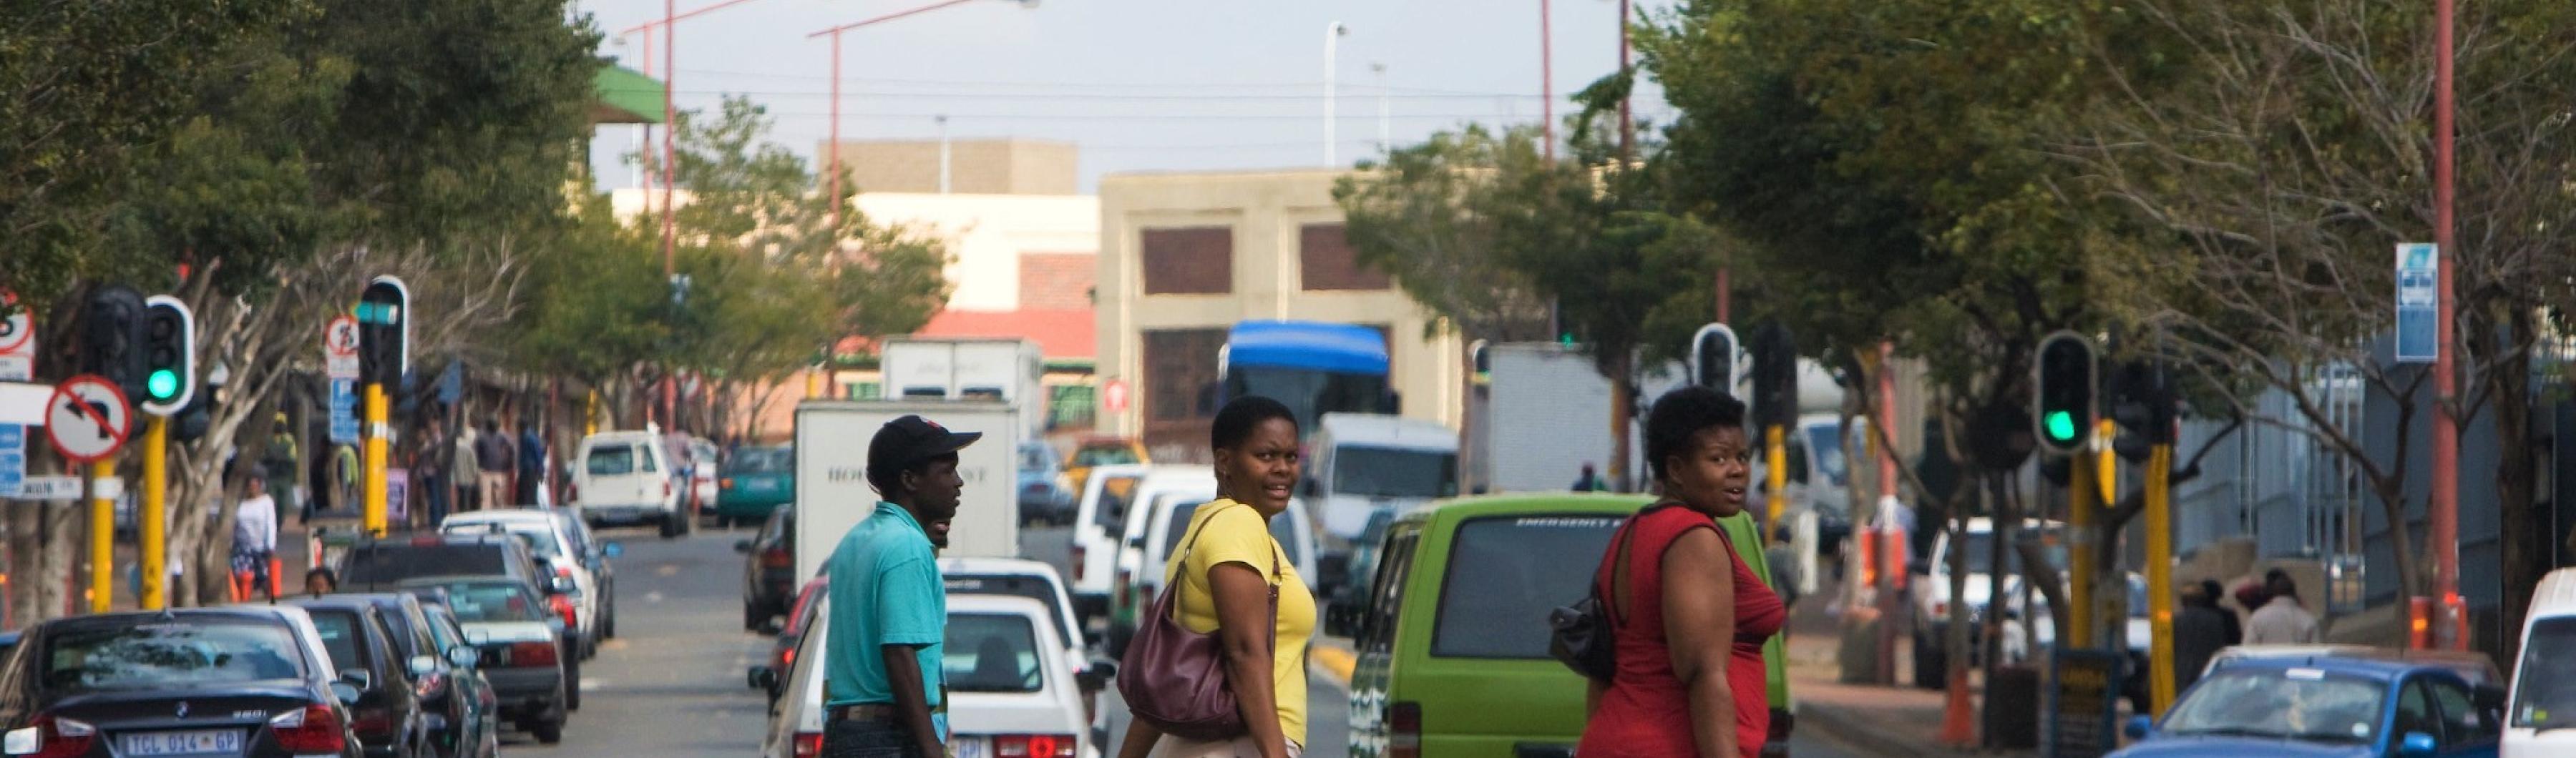 南非约翰内斯堡的人们穿越繁忙的街道